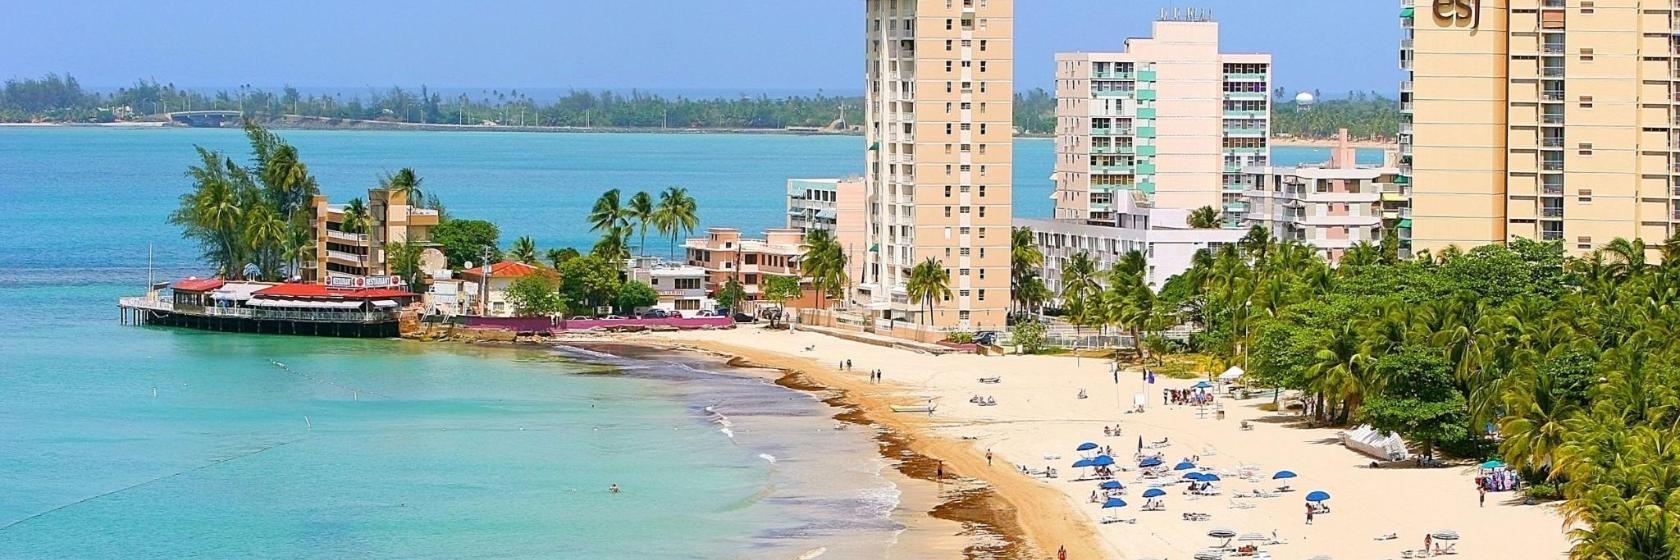 Los 10 mejores hoteles de Isla Verde, San Juan, Puerto Rico